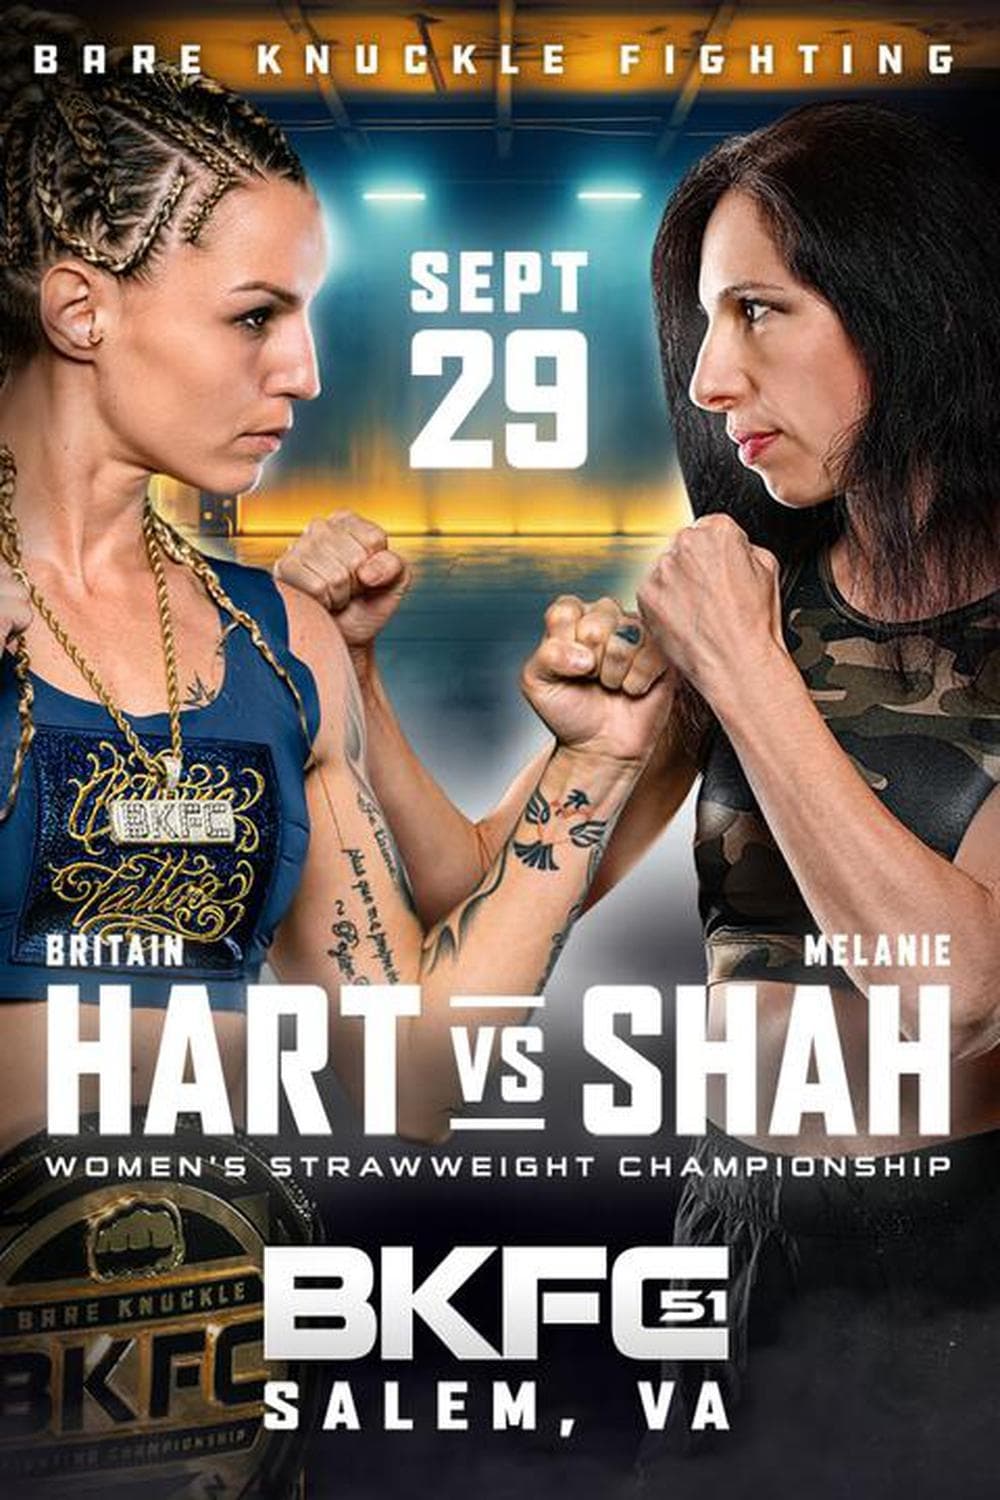 BKFC 51: Hart vs. Shah